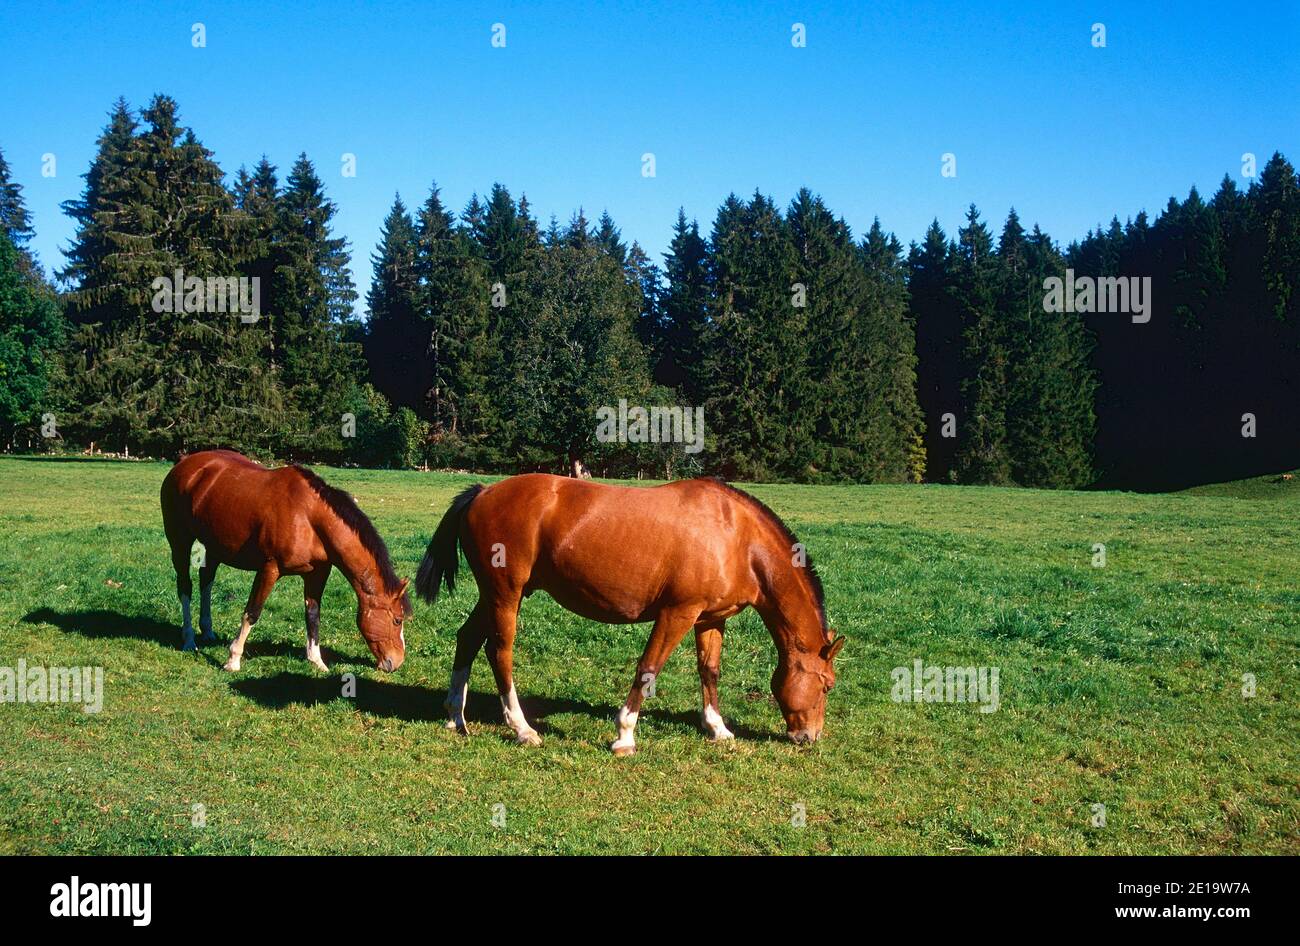 Franches-Montagnes, raza Suiza de caballos, équidos, pastoreo, mamífero, animal, Franches-Montagnes, cantón de Jura, Suiza Foto de stock